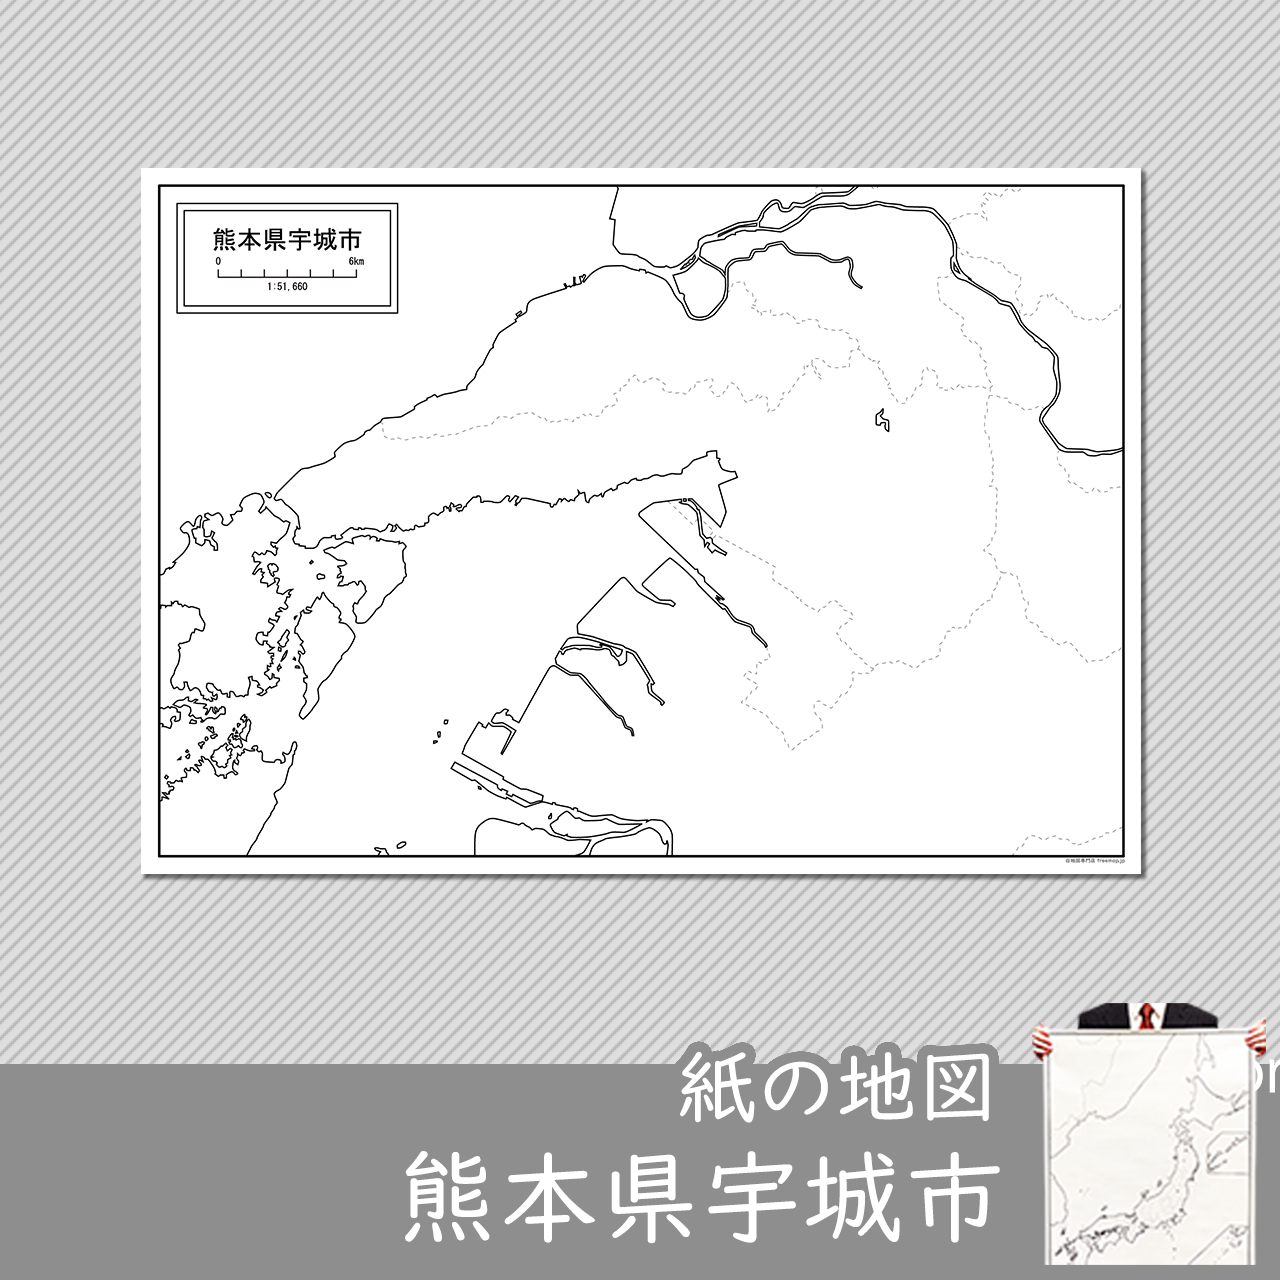 宇城市の紙の白地図のサムネイル